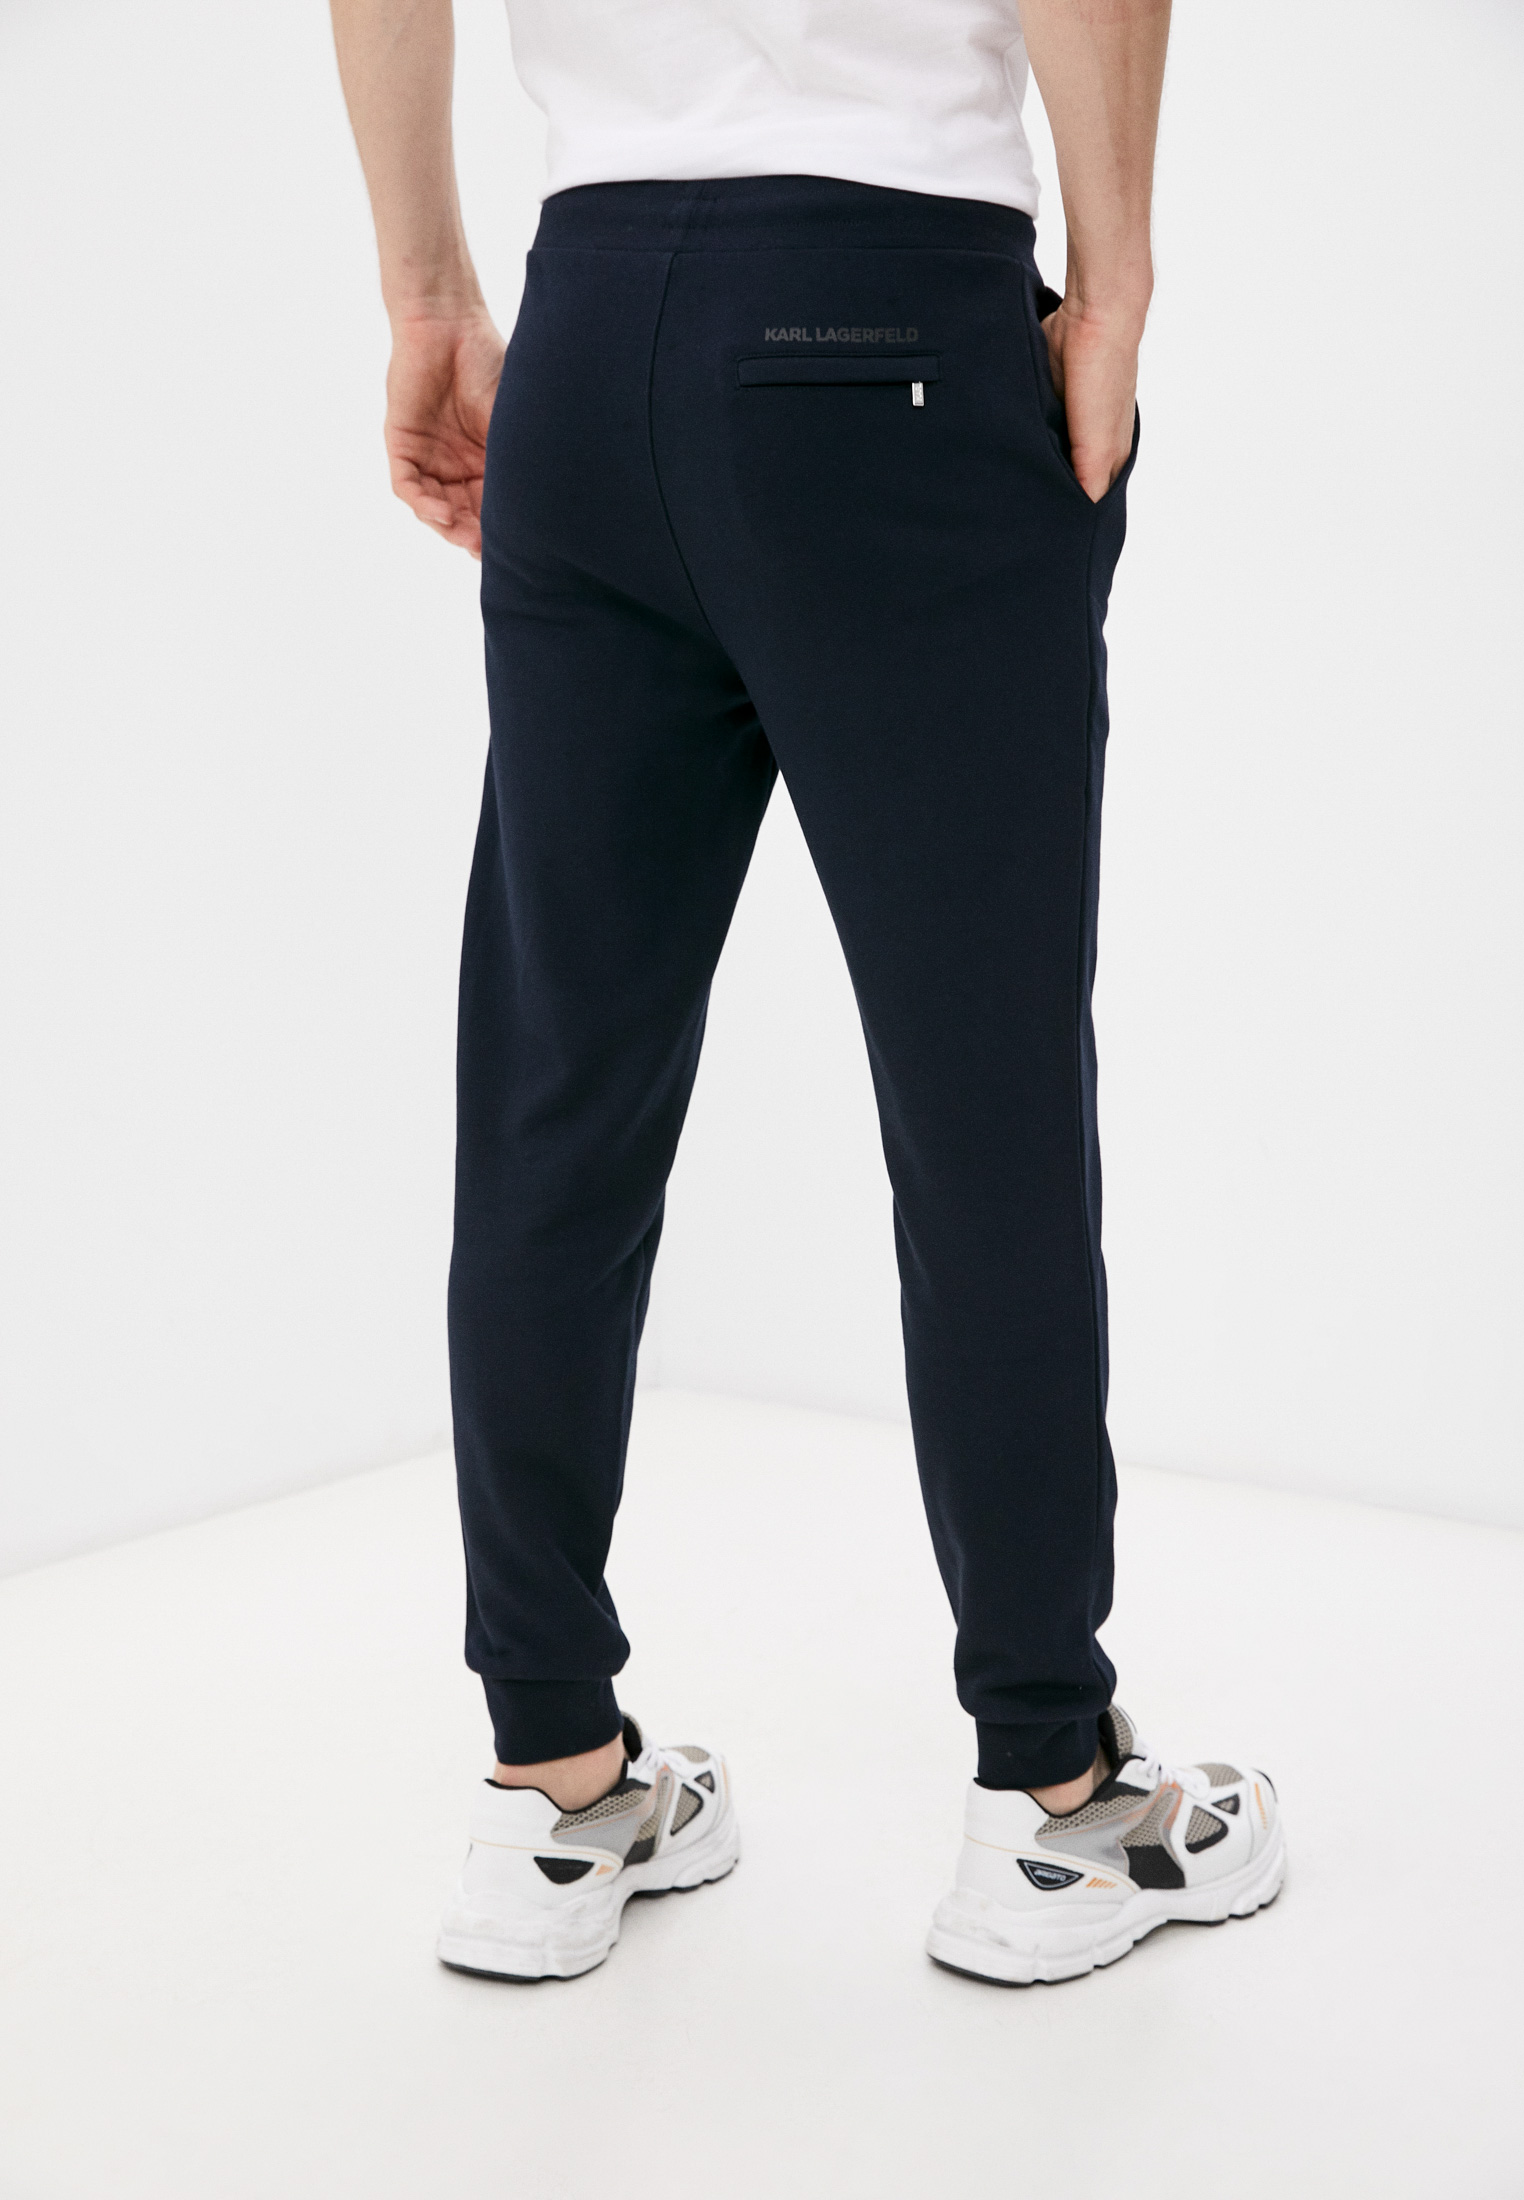 Мужские спортивные брюки Karl Lagerfeld (Карл Лагерфельд) 500900-705893: изображение 4